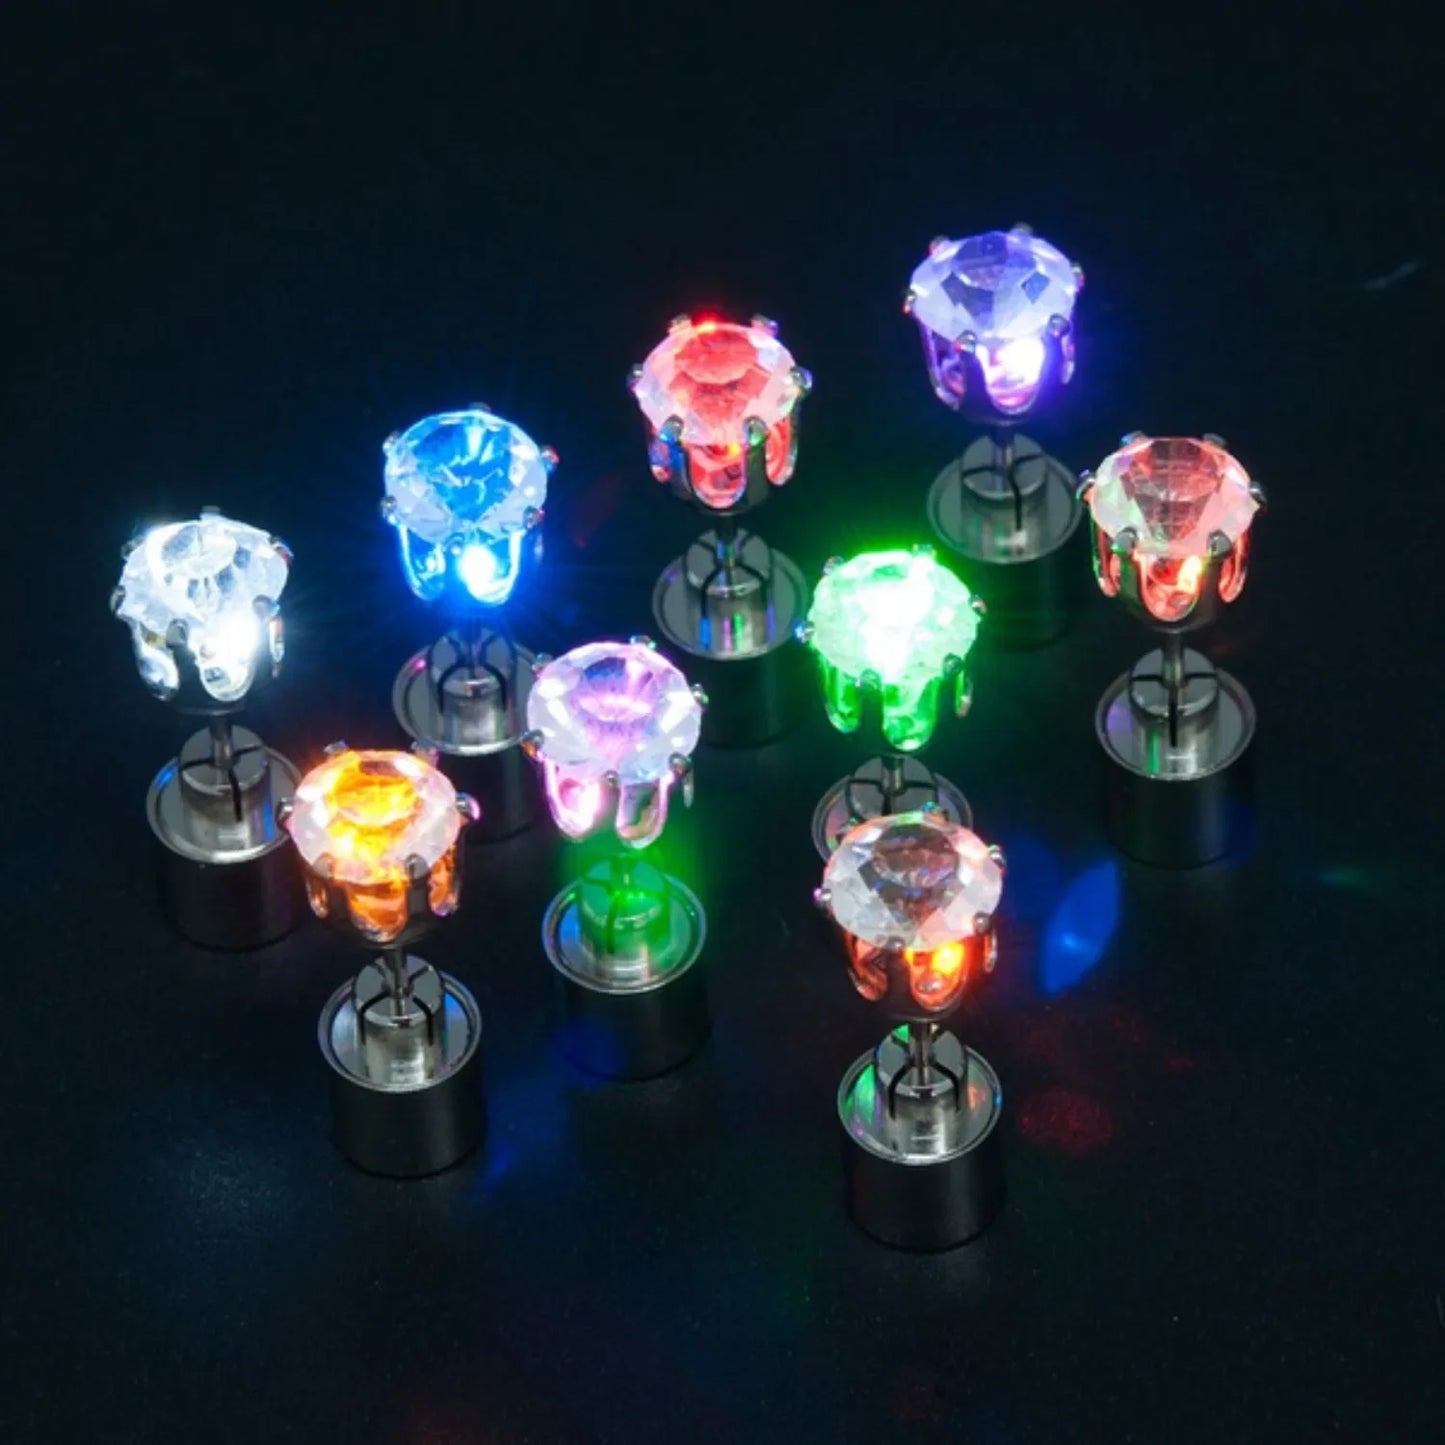 LED Light-Up Earrings